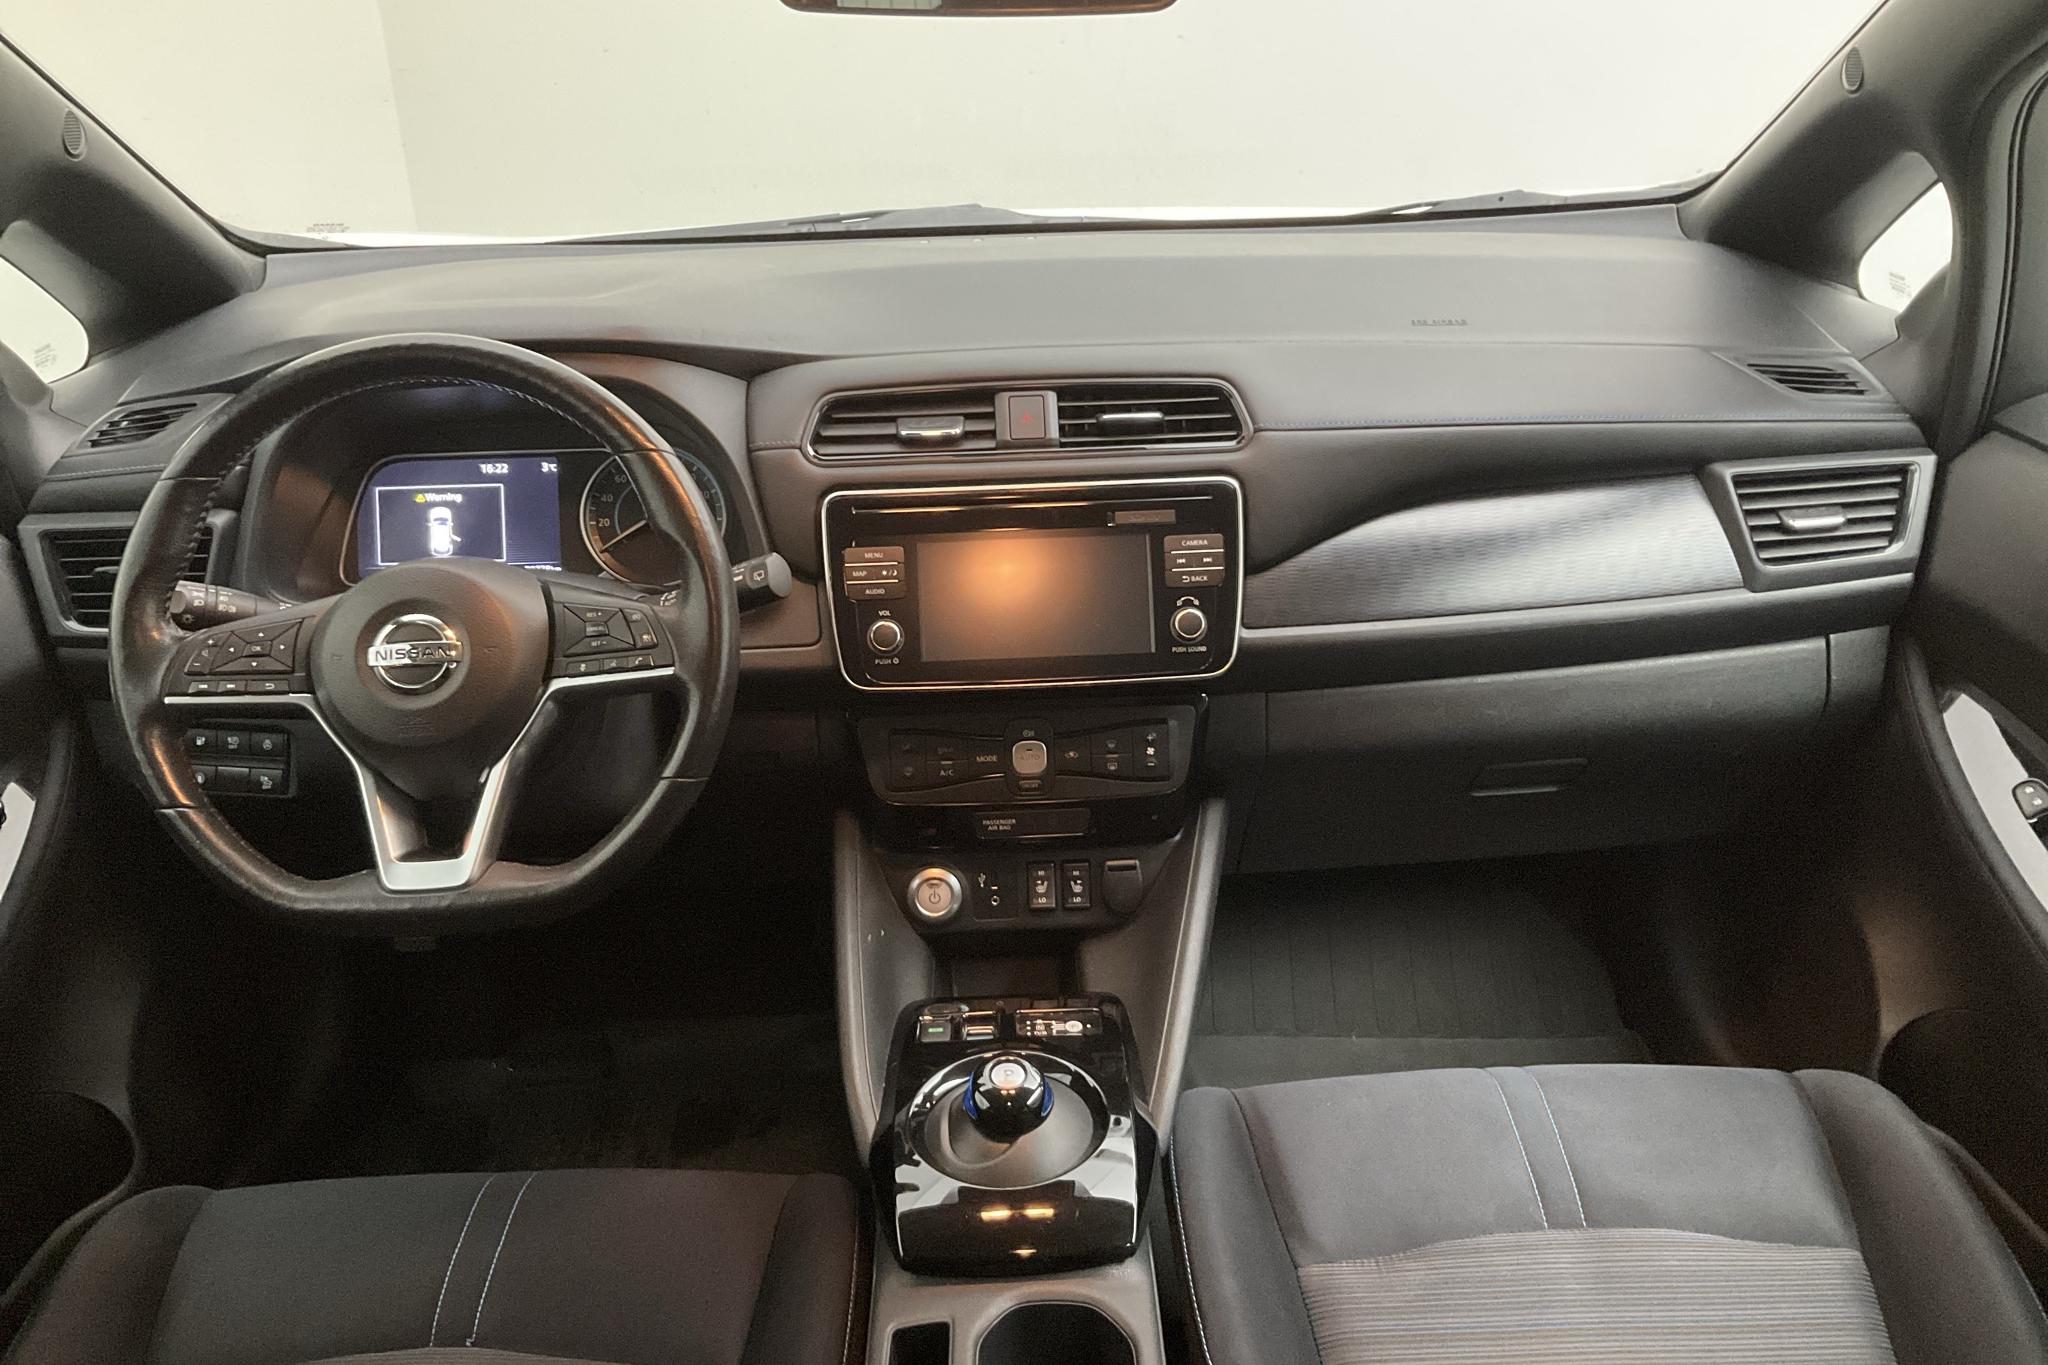 Nissan LEAF 5dr 39 kWh (150hk) - 7 978 mil - Automat - vit - 2019